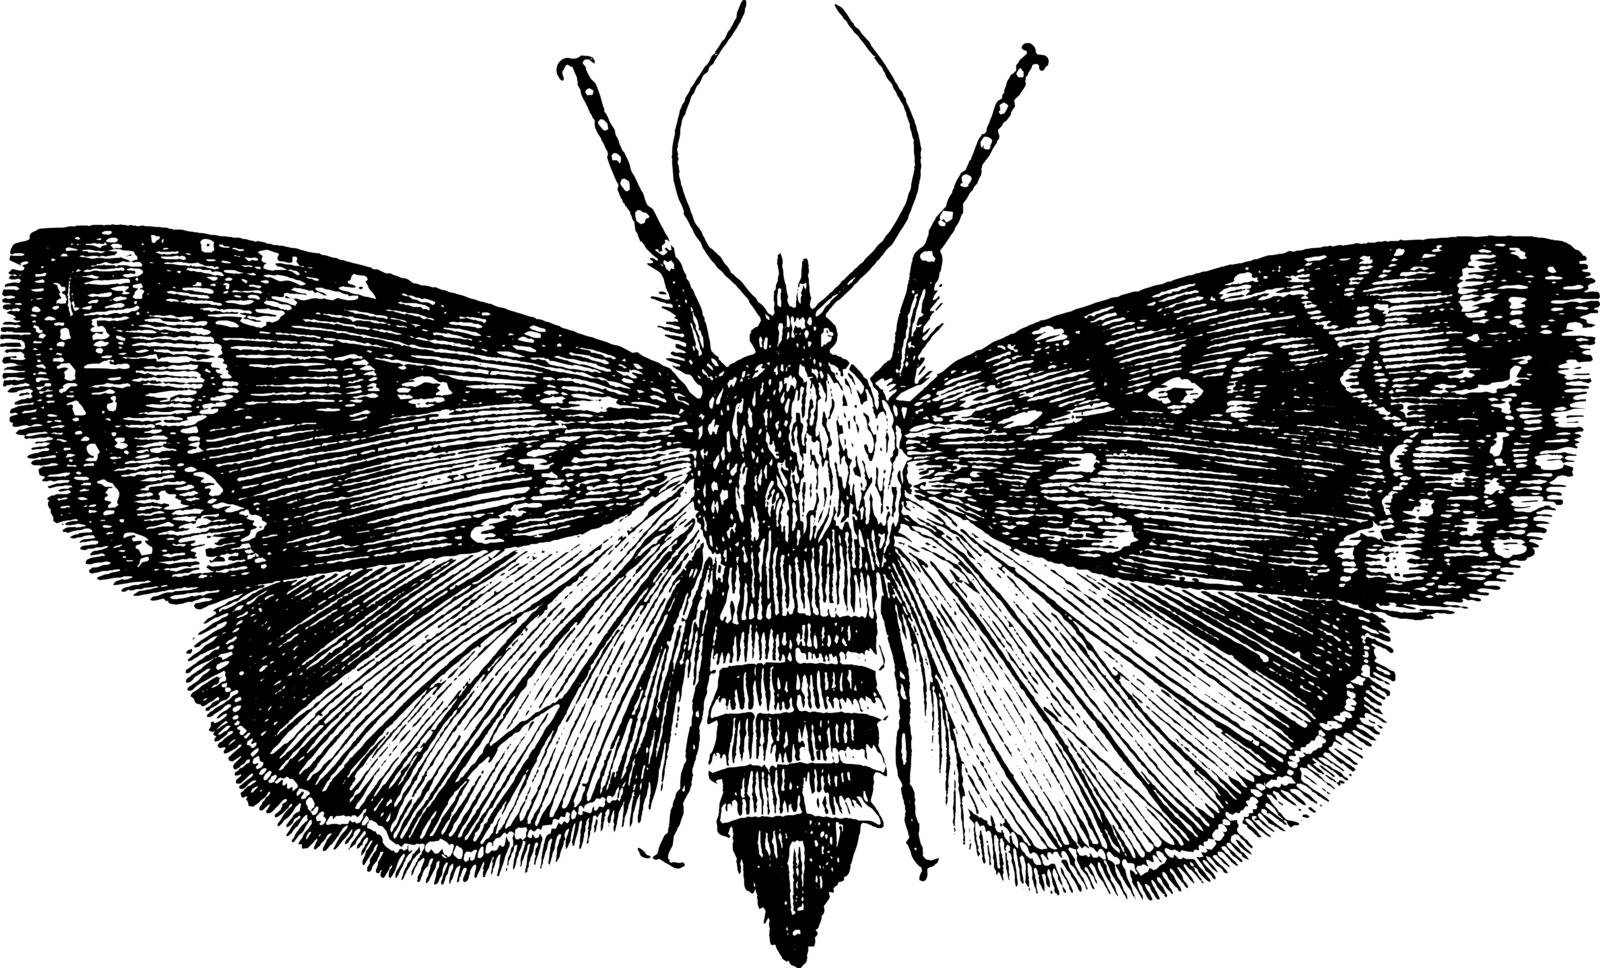 Grape Vine Moth whose larva feeds mostly on grape vines, vintage line drawing or engraving illustration.